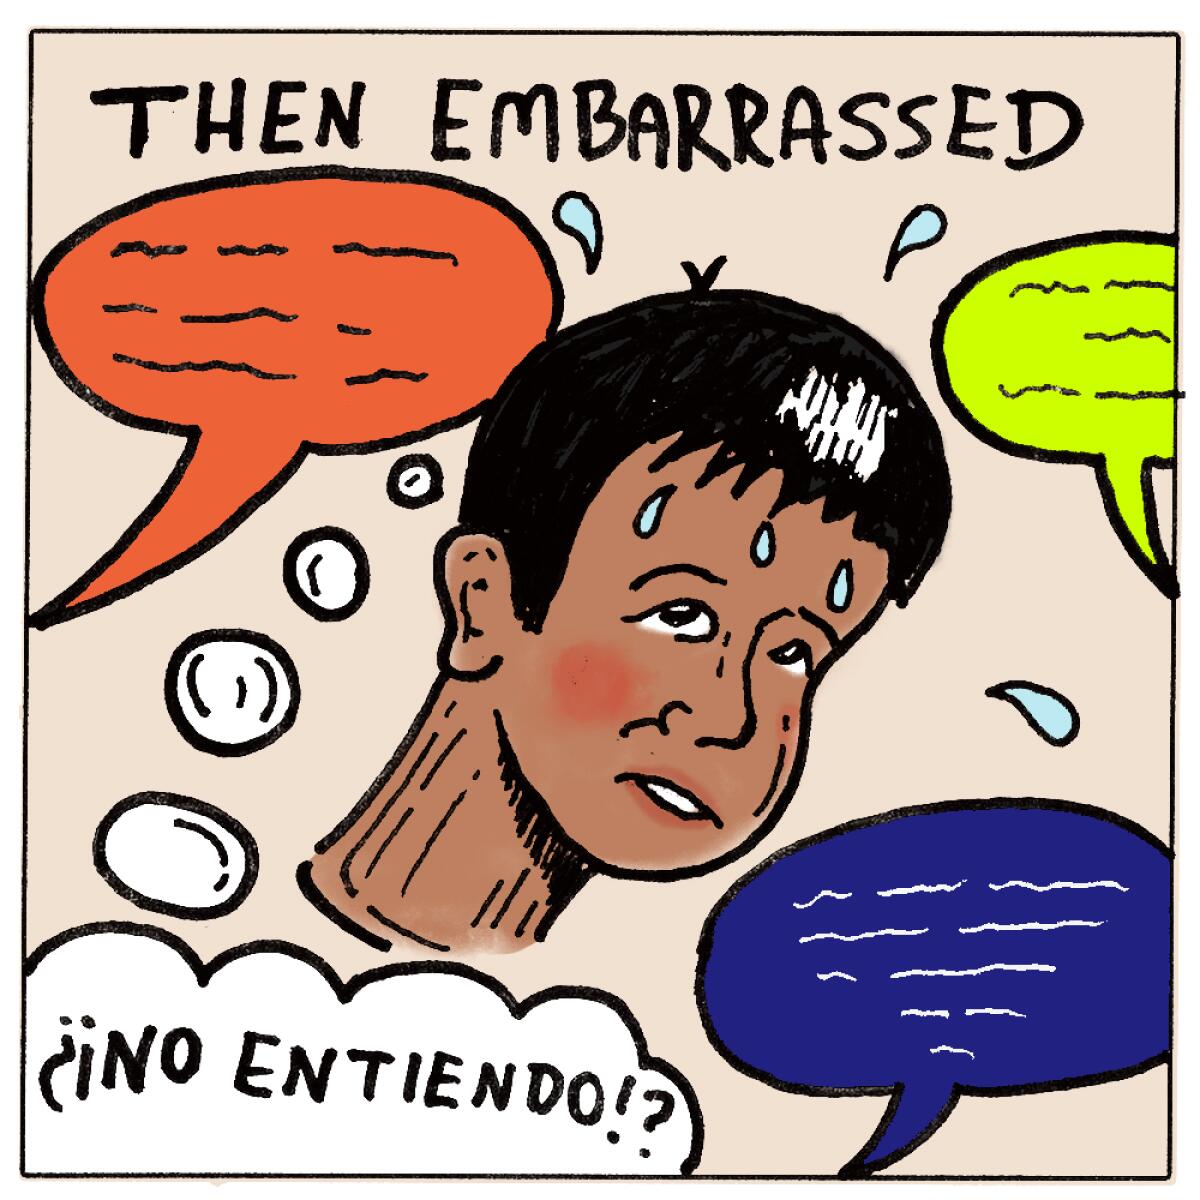 Then embarrassed. "No entiendo"